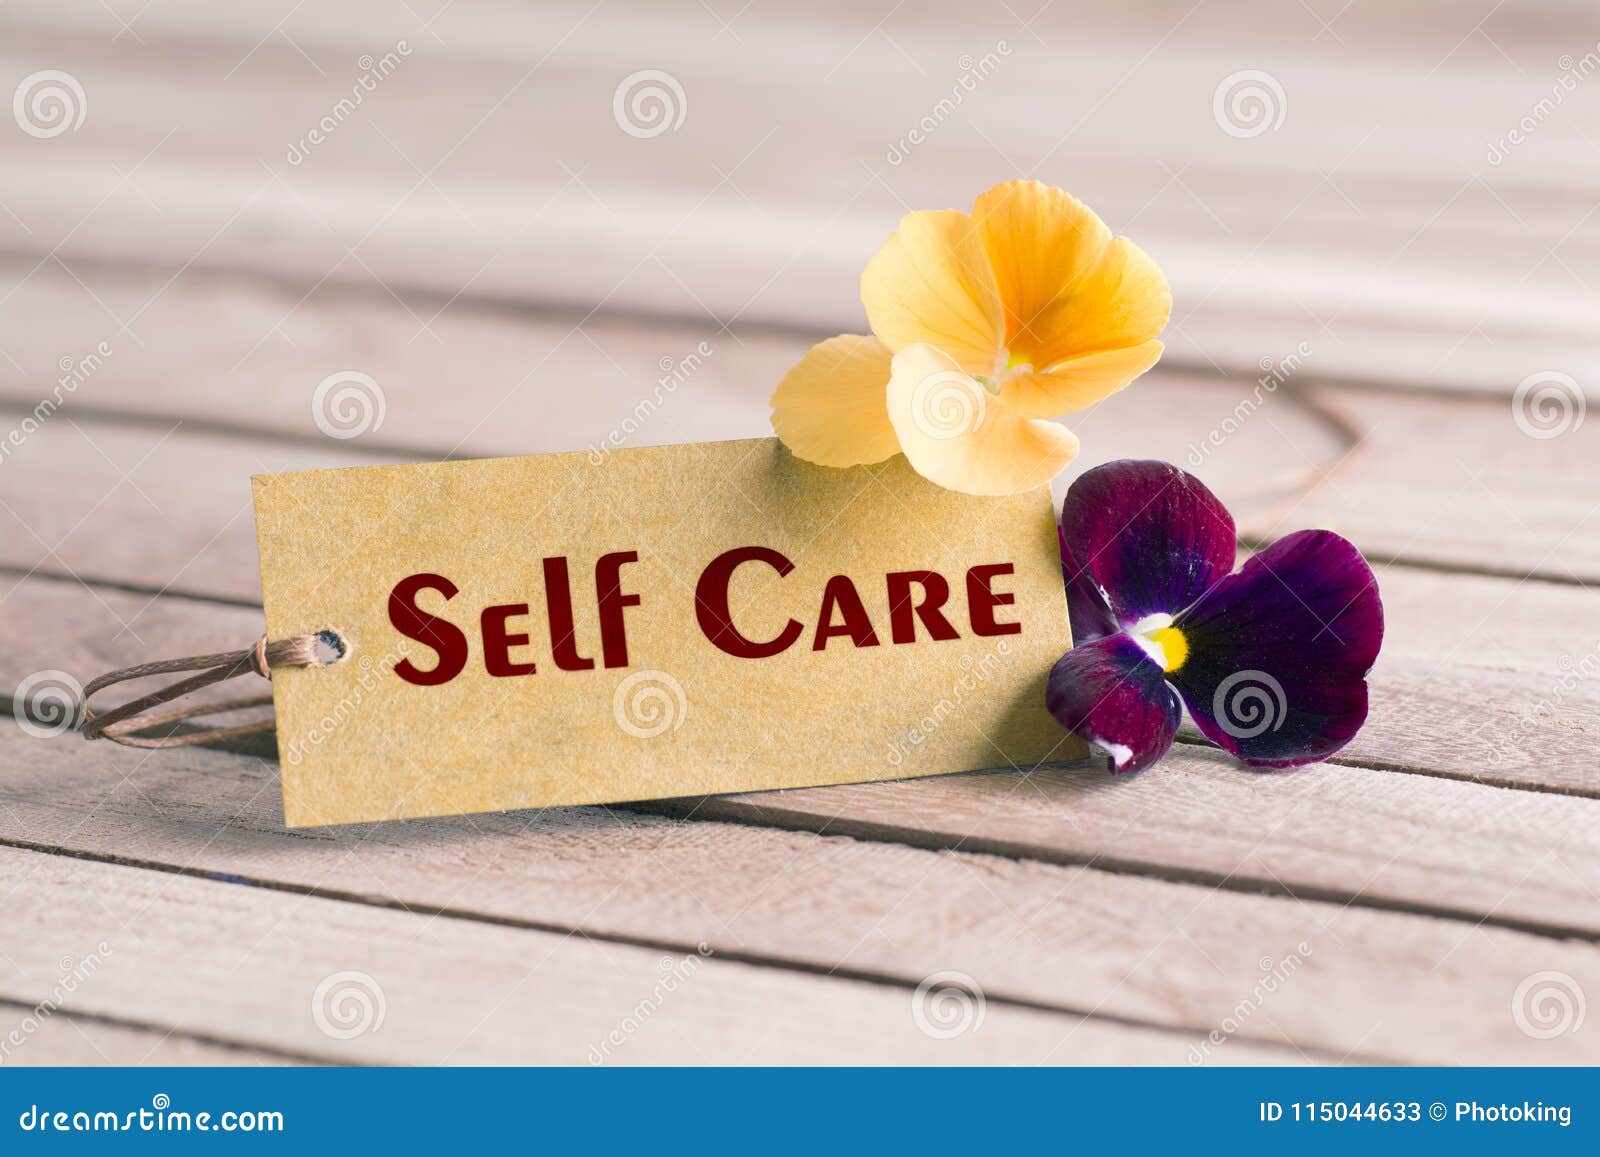 self care tag